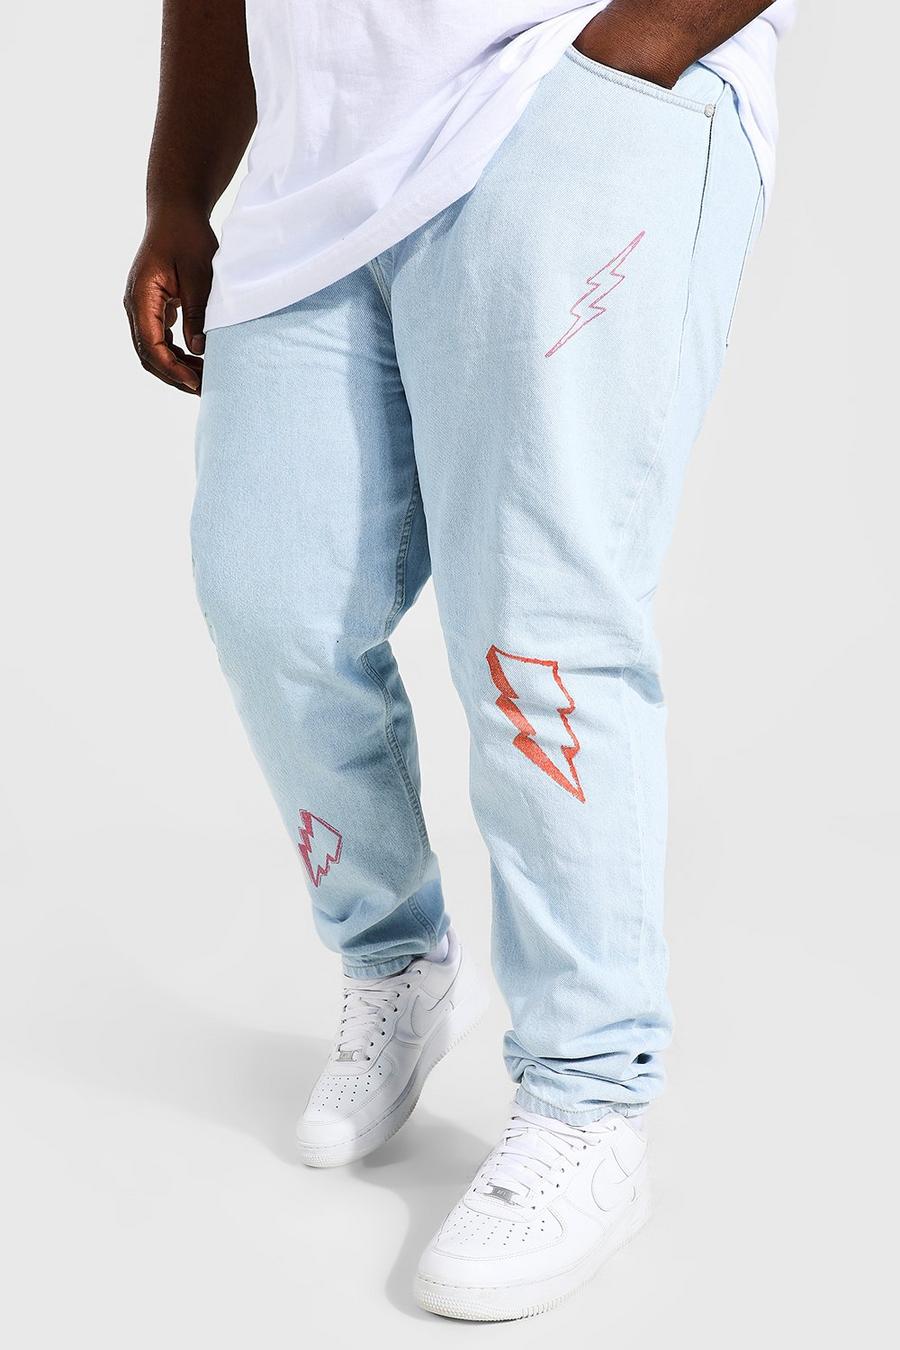 כחול קרח סקיני ג'ינס מבד קשיח עם הדפס ברקים, למידות גדולות image number 1